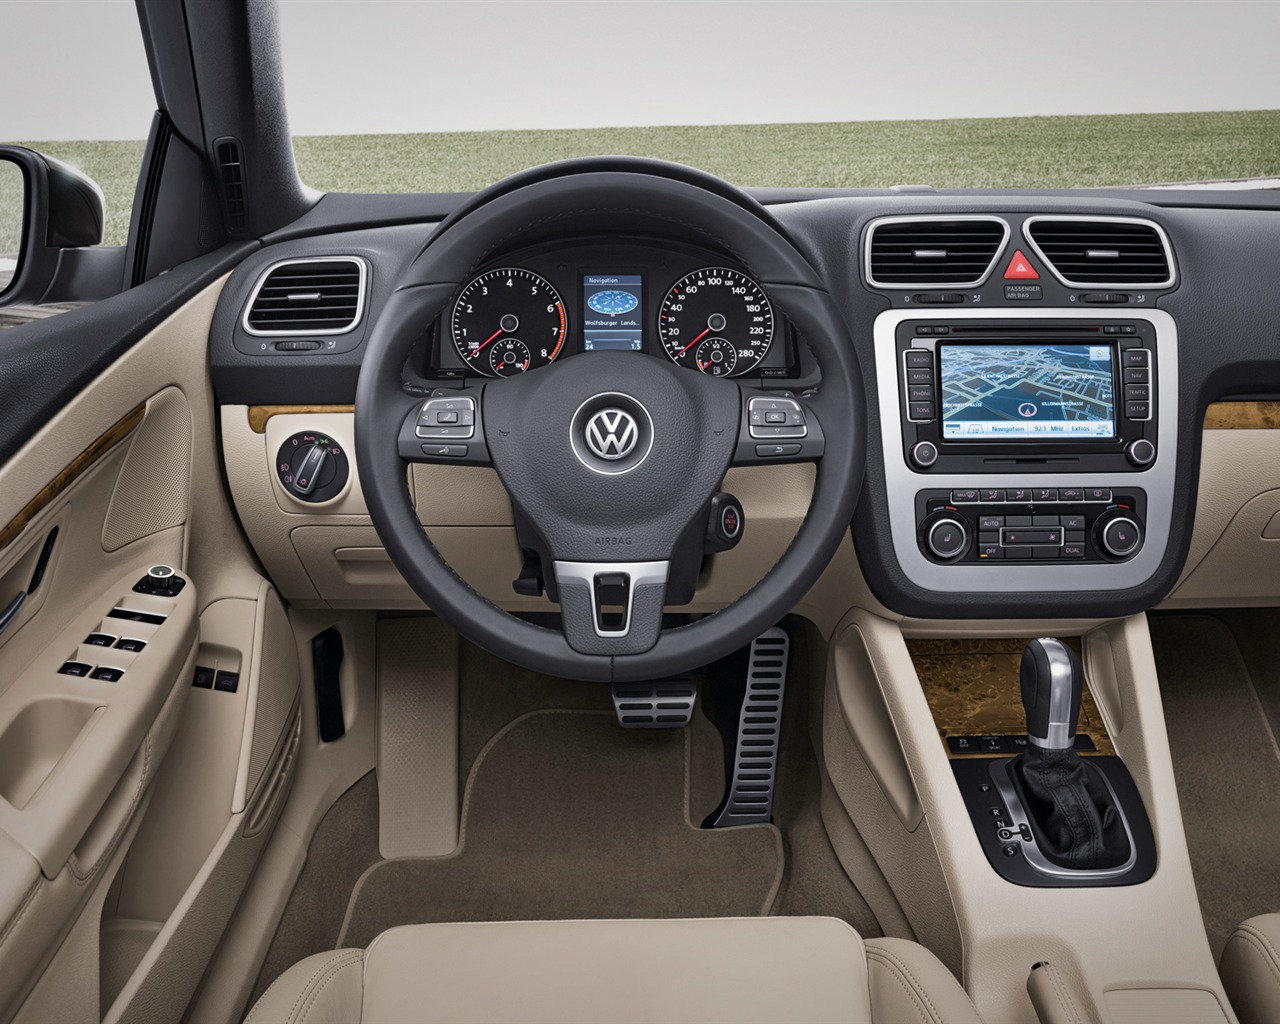 Volkswagen Eos - 2011 大众14 - 1280x1024